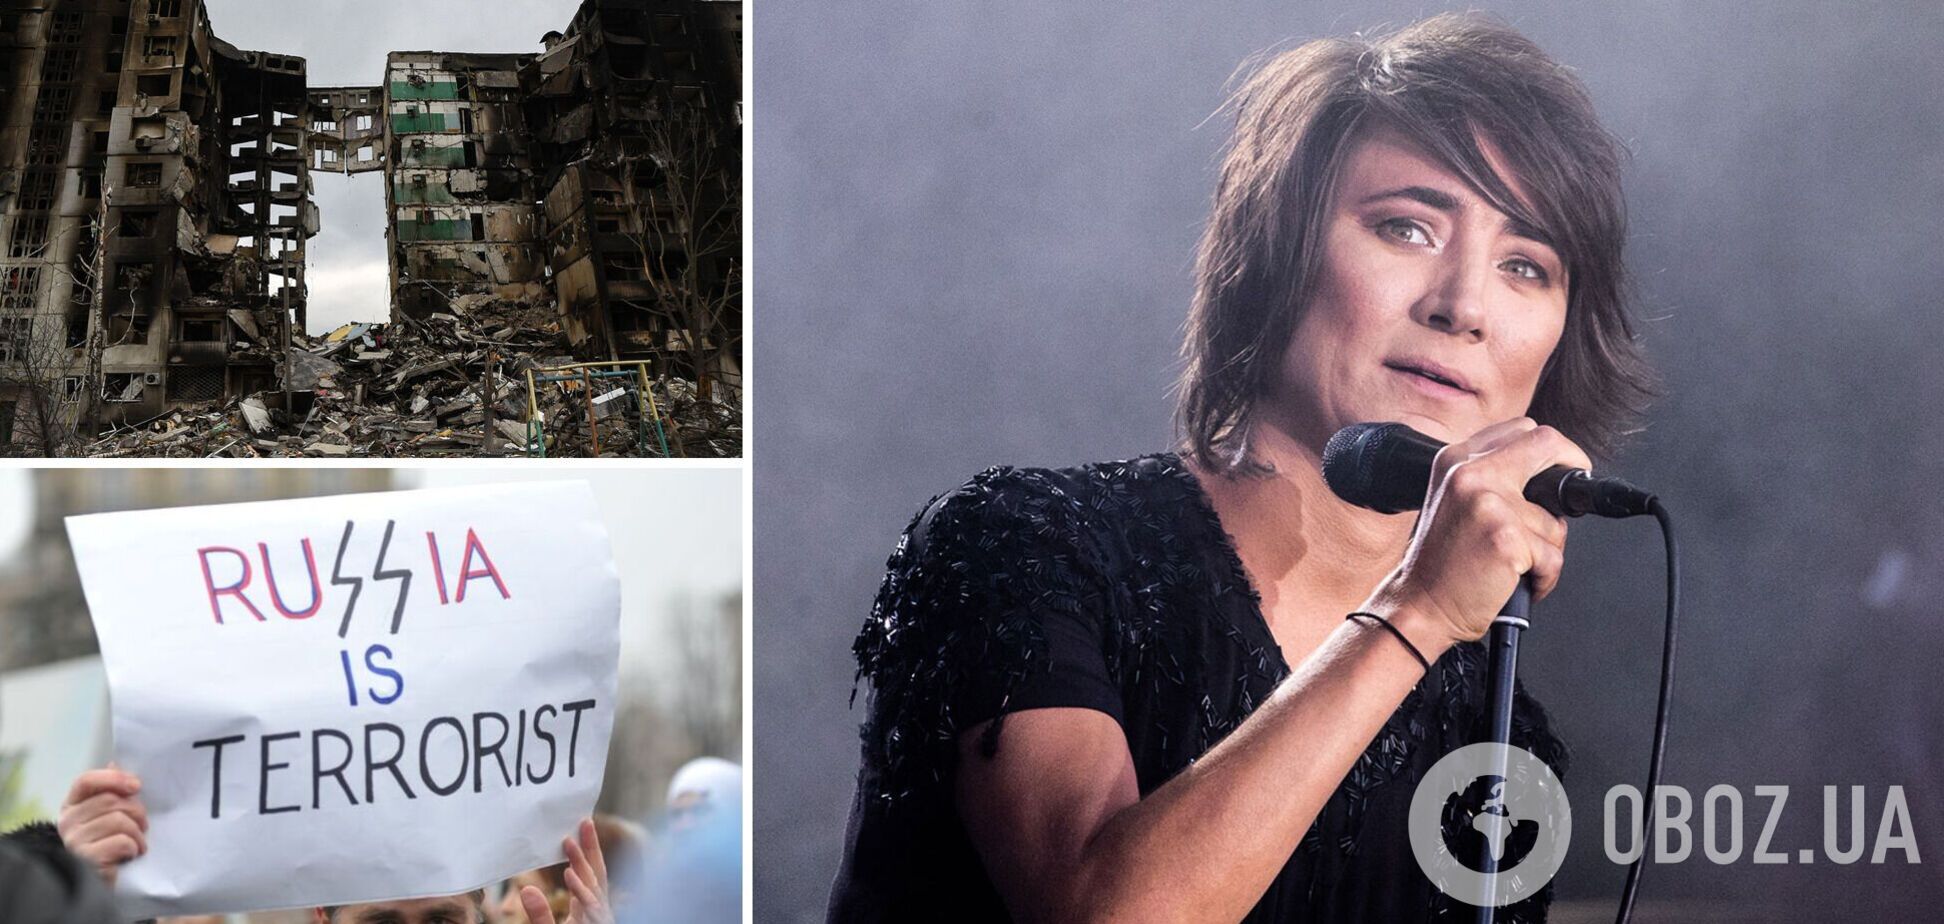 'Моя страна должна прекратить войну': Земфира на концерте в Берлине выступила с мощной антивоенной речью. Видео